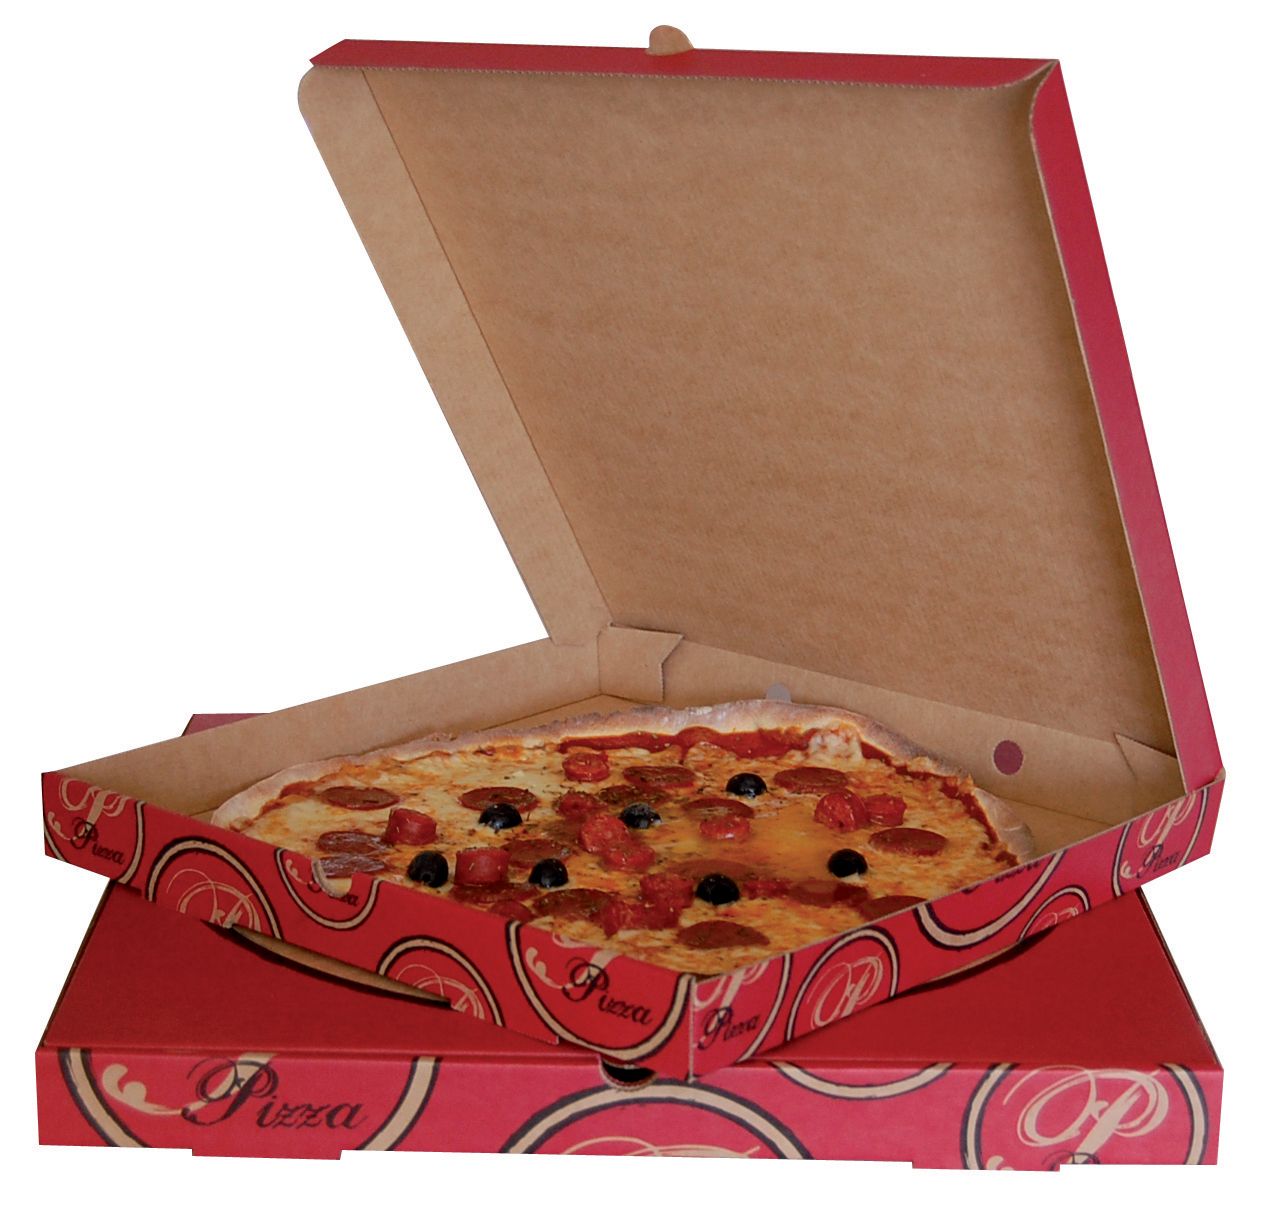 https://www.emballage-garrigou.fr/985/boites-pizza-carton-alimentaire-vente-emporter-traiteur-livraison-domicile-alimentation-restaurant-pizzaiolo-.jpg